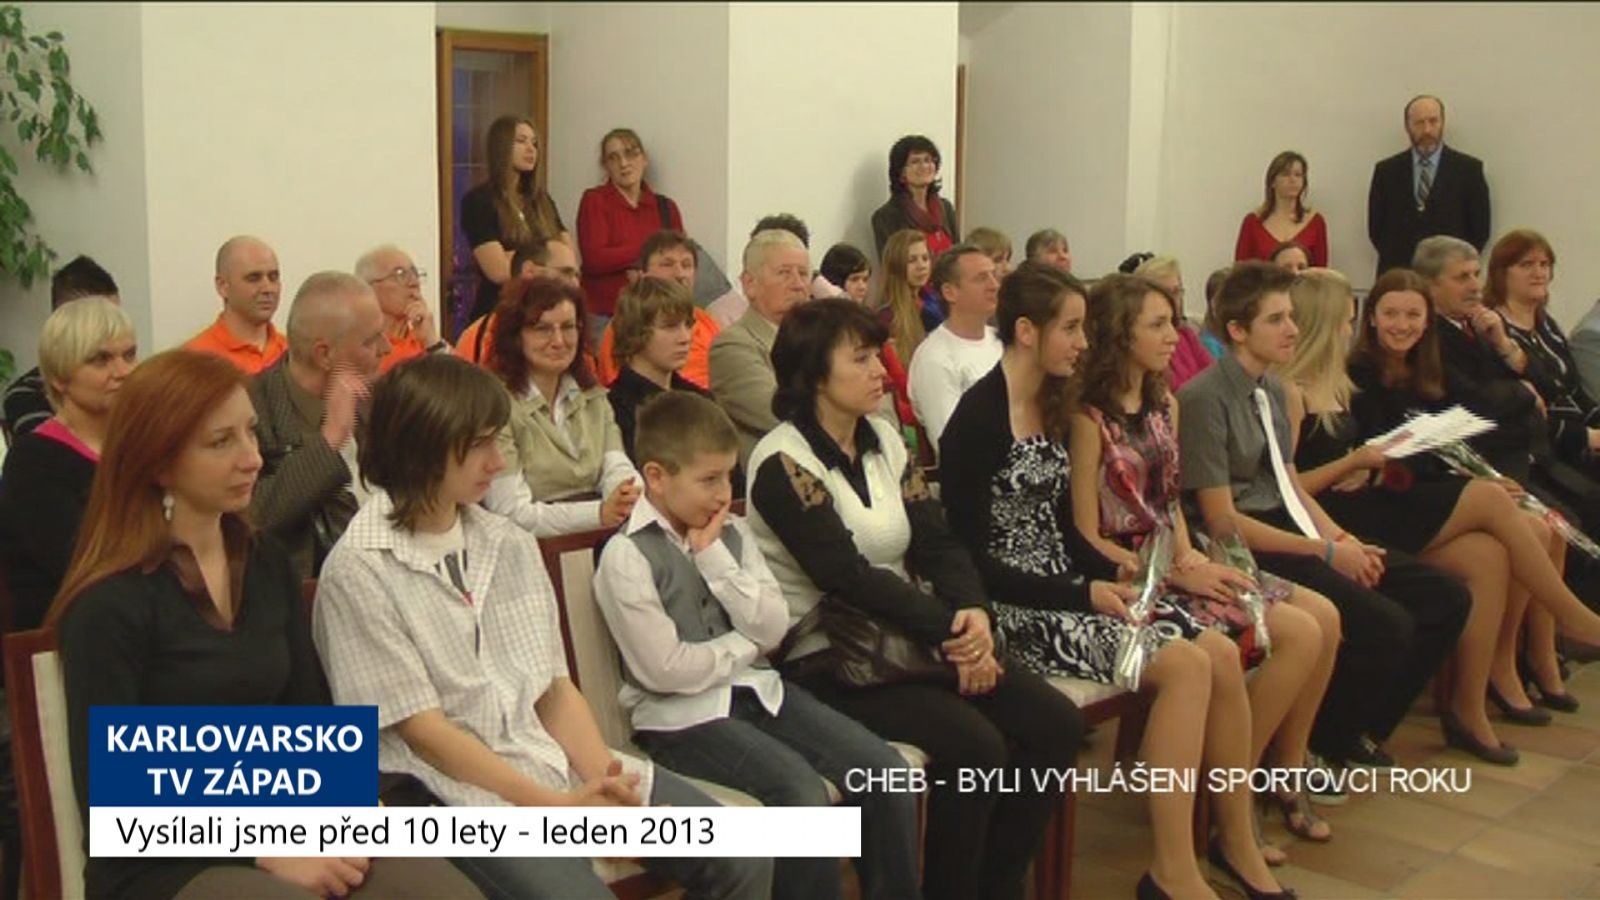 2013 – Cheb: Byli vyhlášeni sportovci roku (TV Západ)